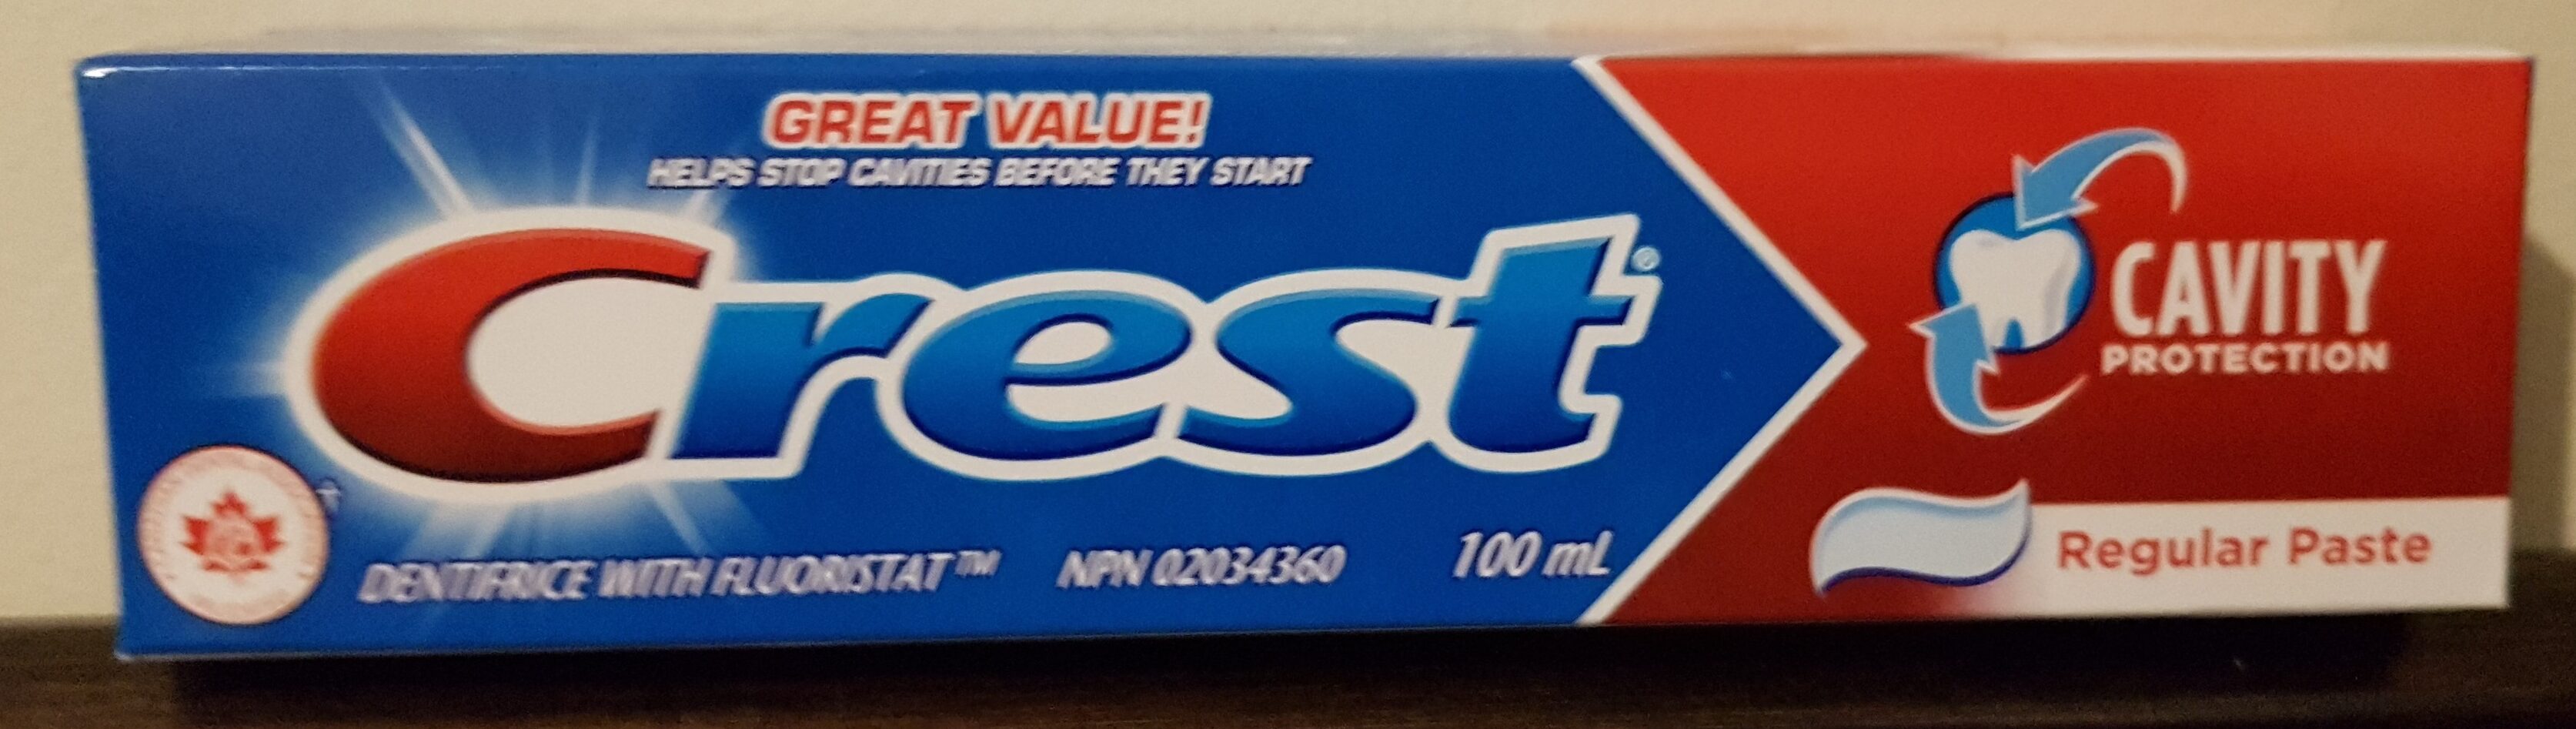 Regular Paste Toothpaste - Product - en